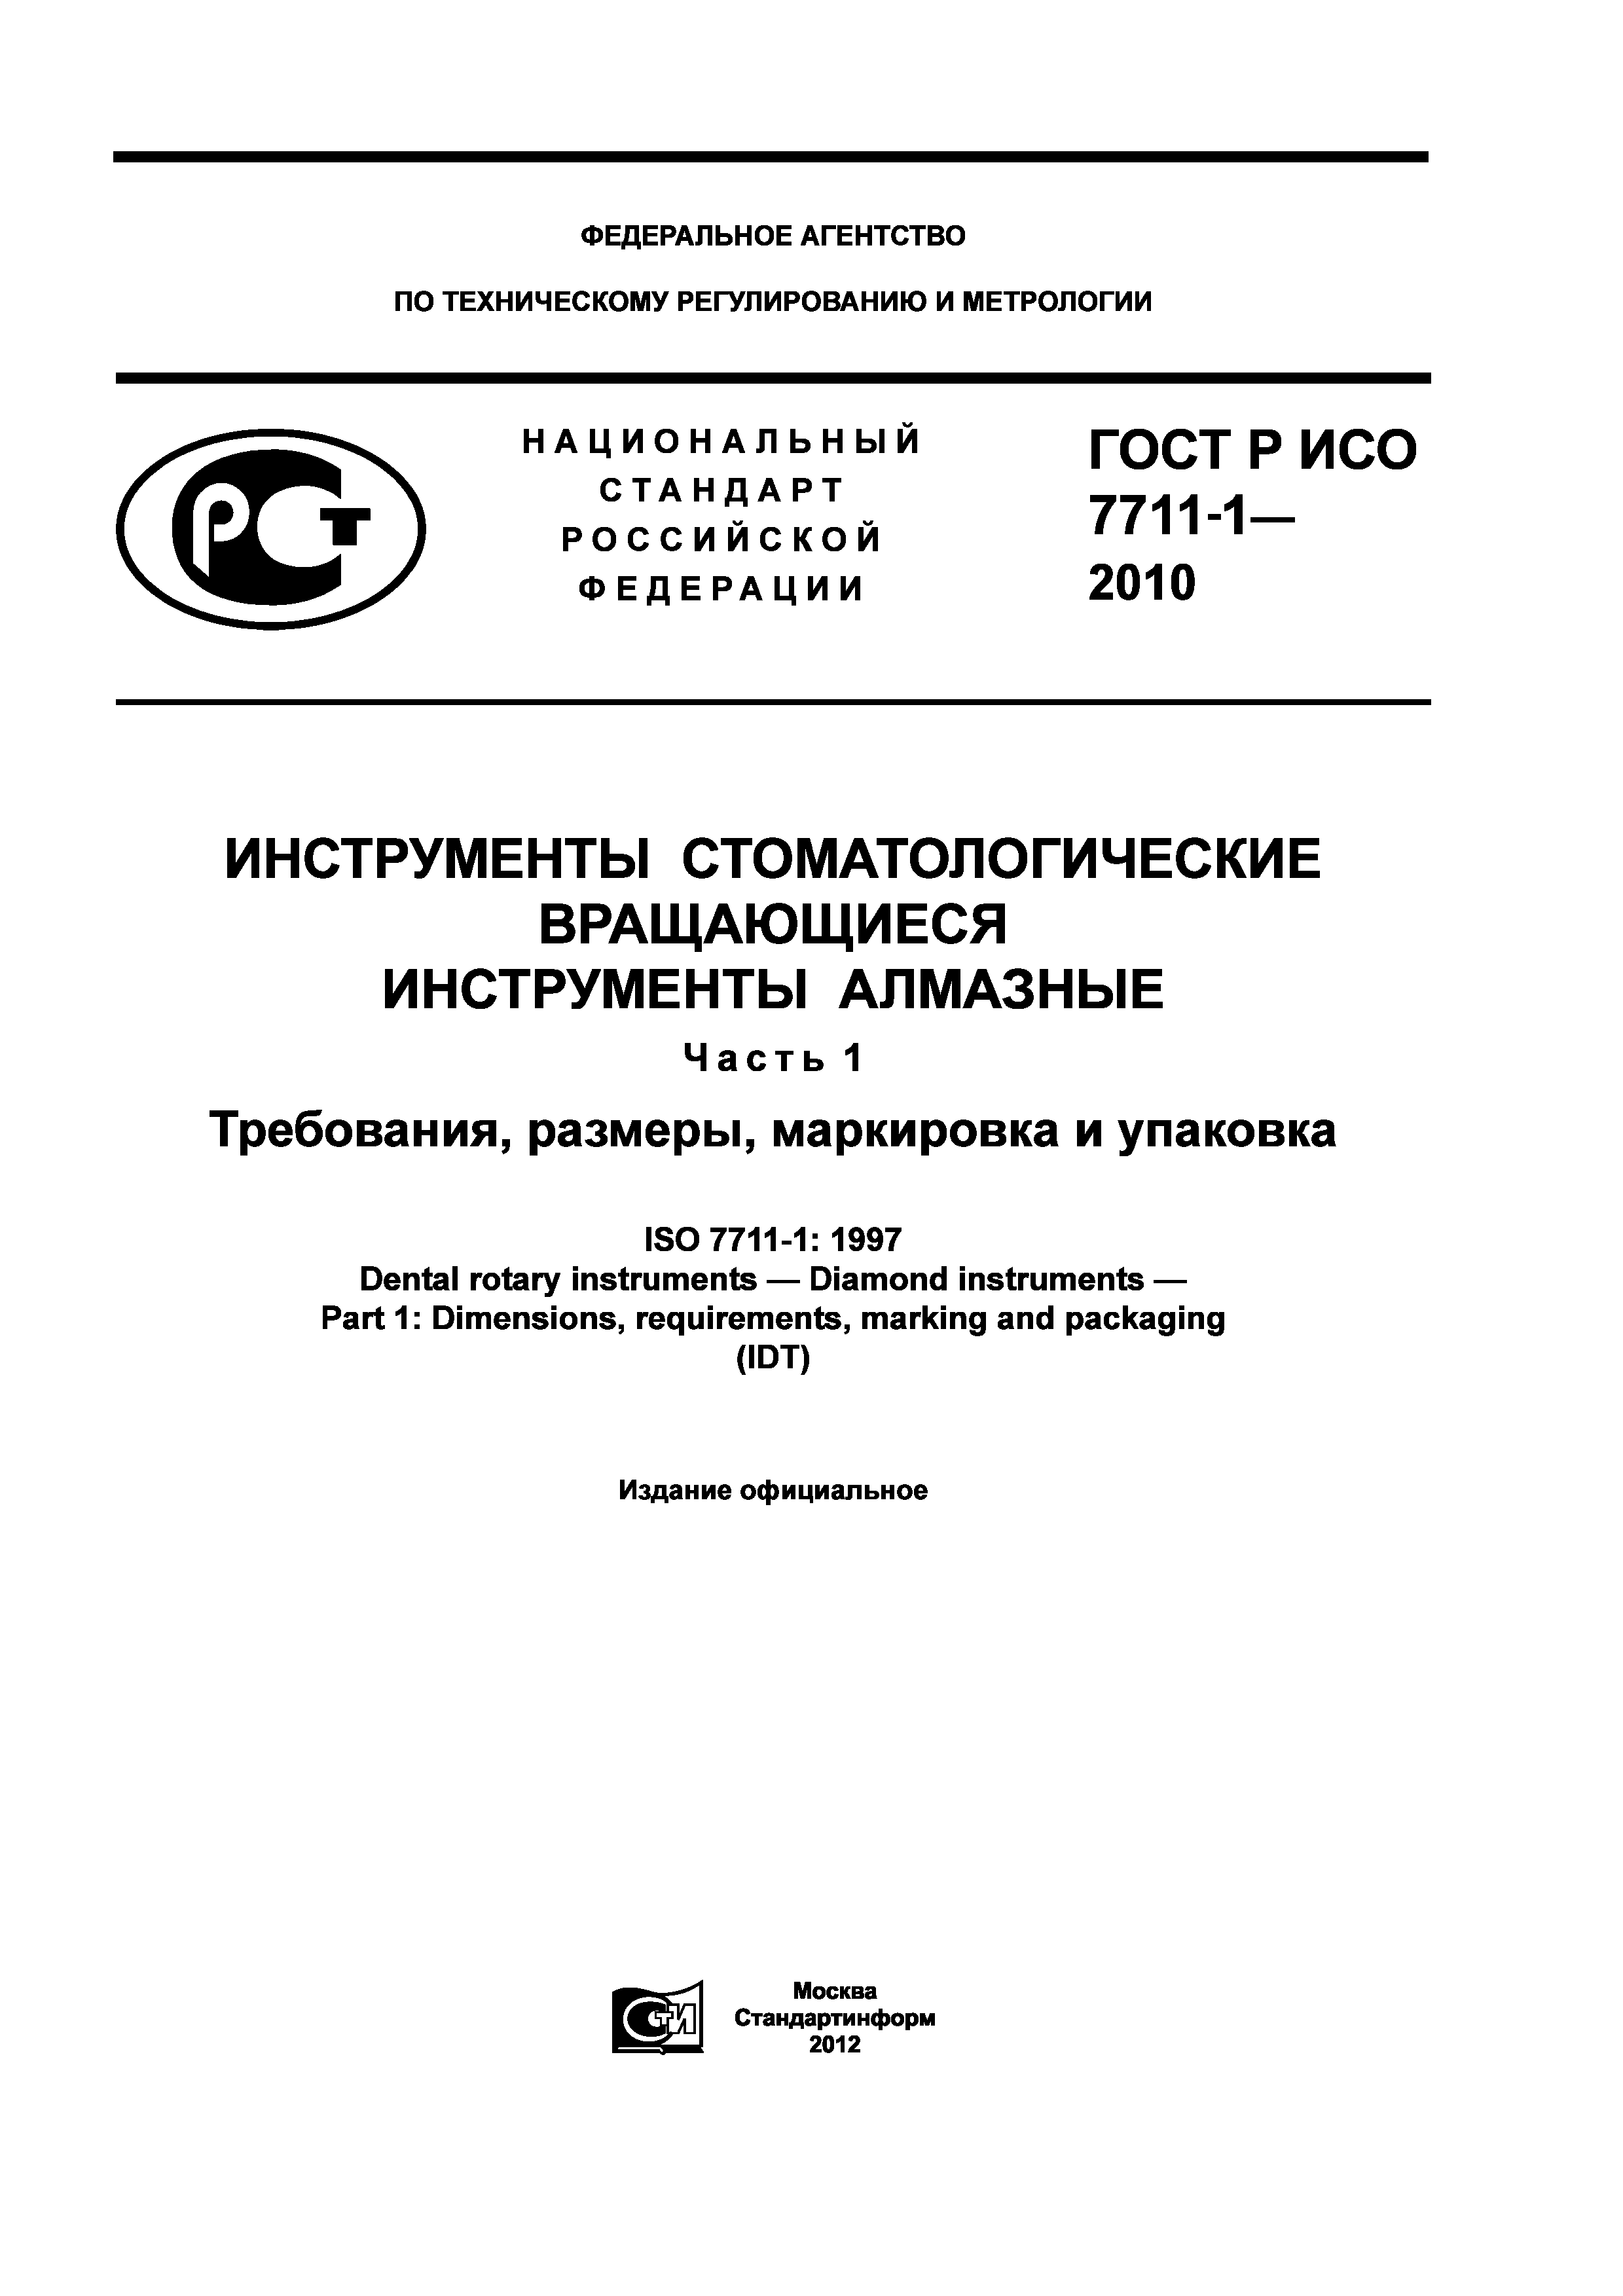 ГОСТ Р ИСО 7711-1-2010